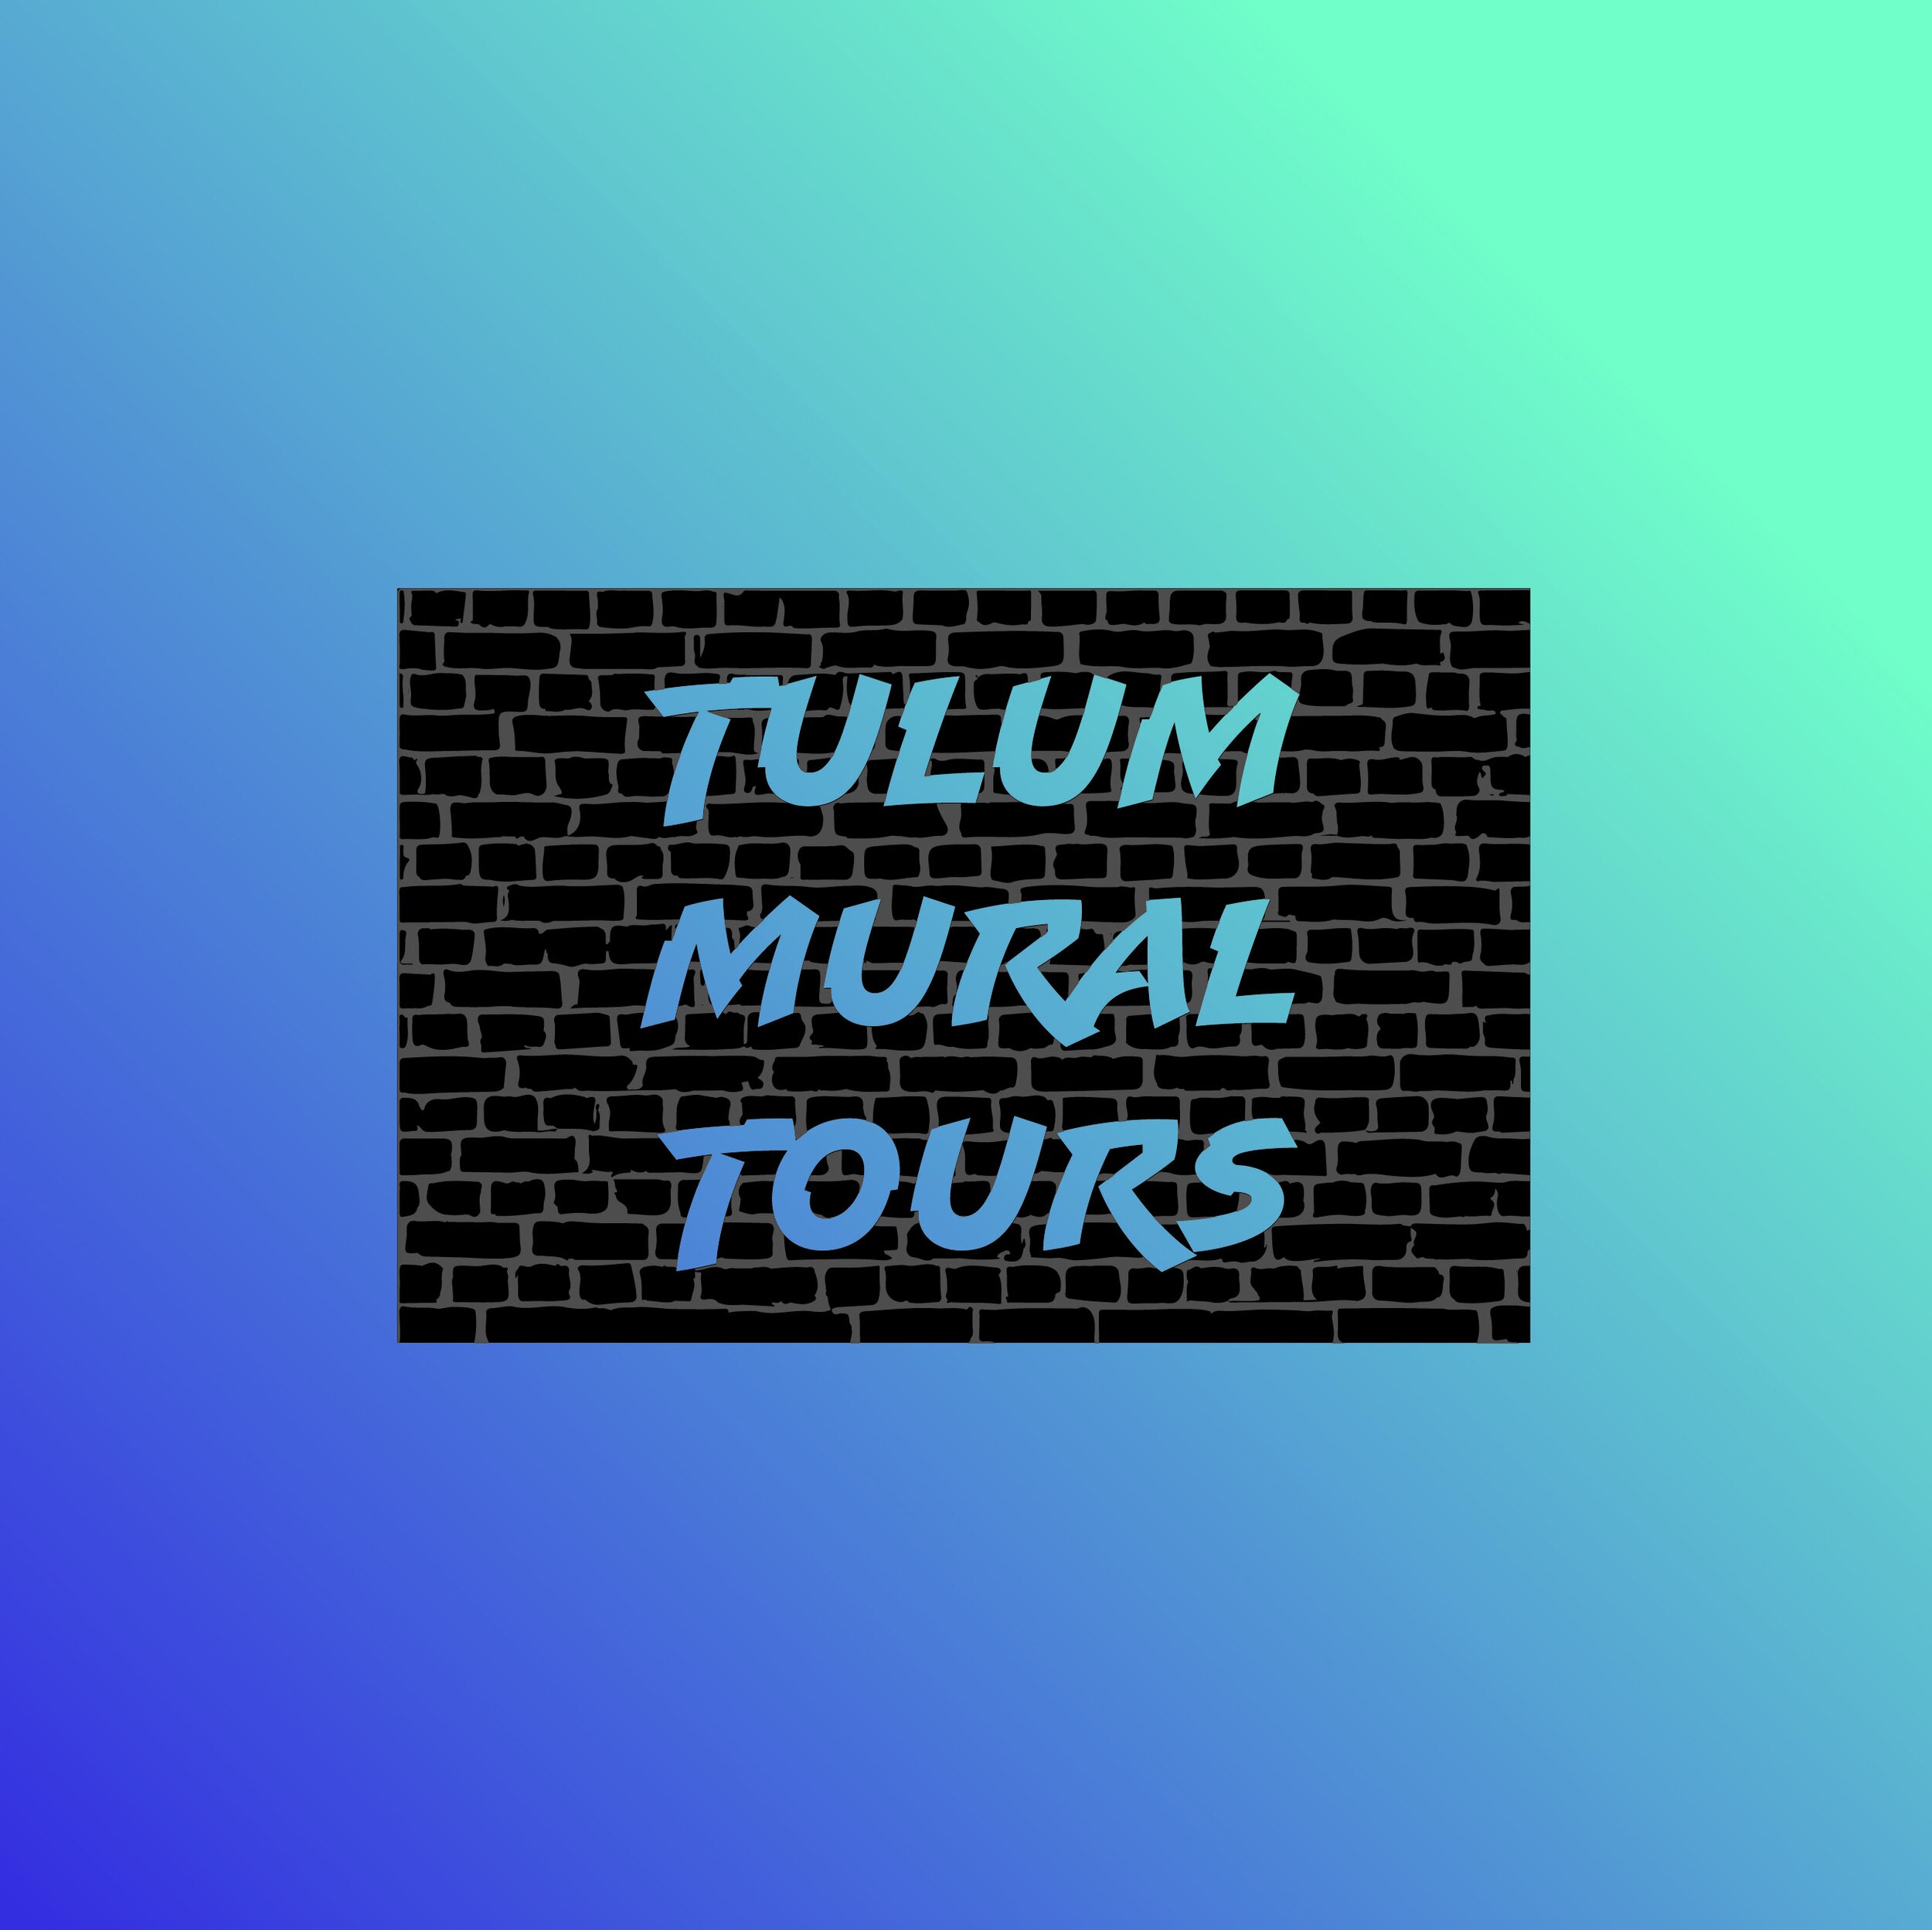 Tulum Mural Tours